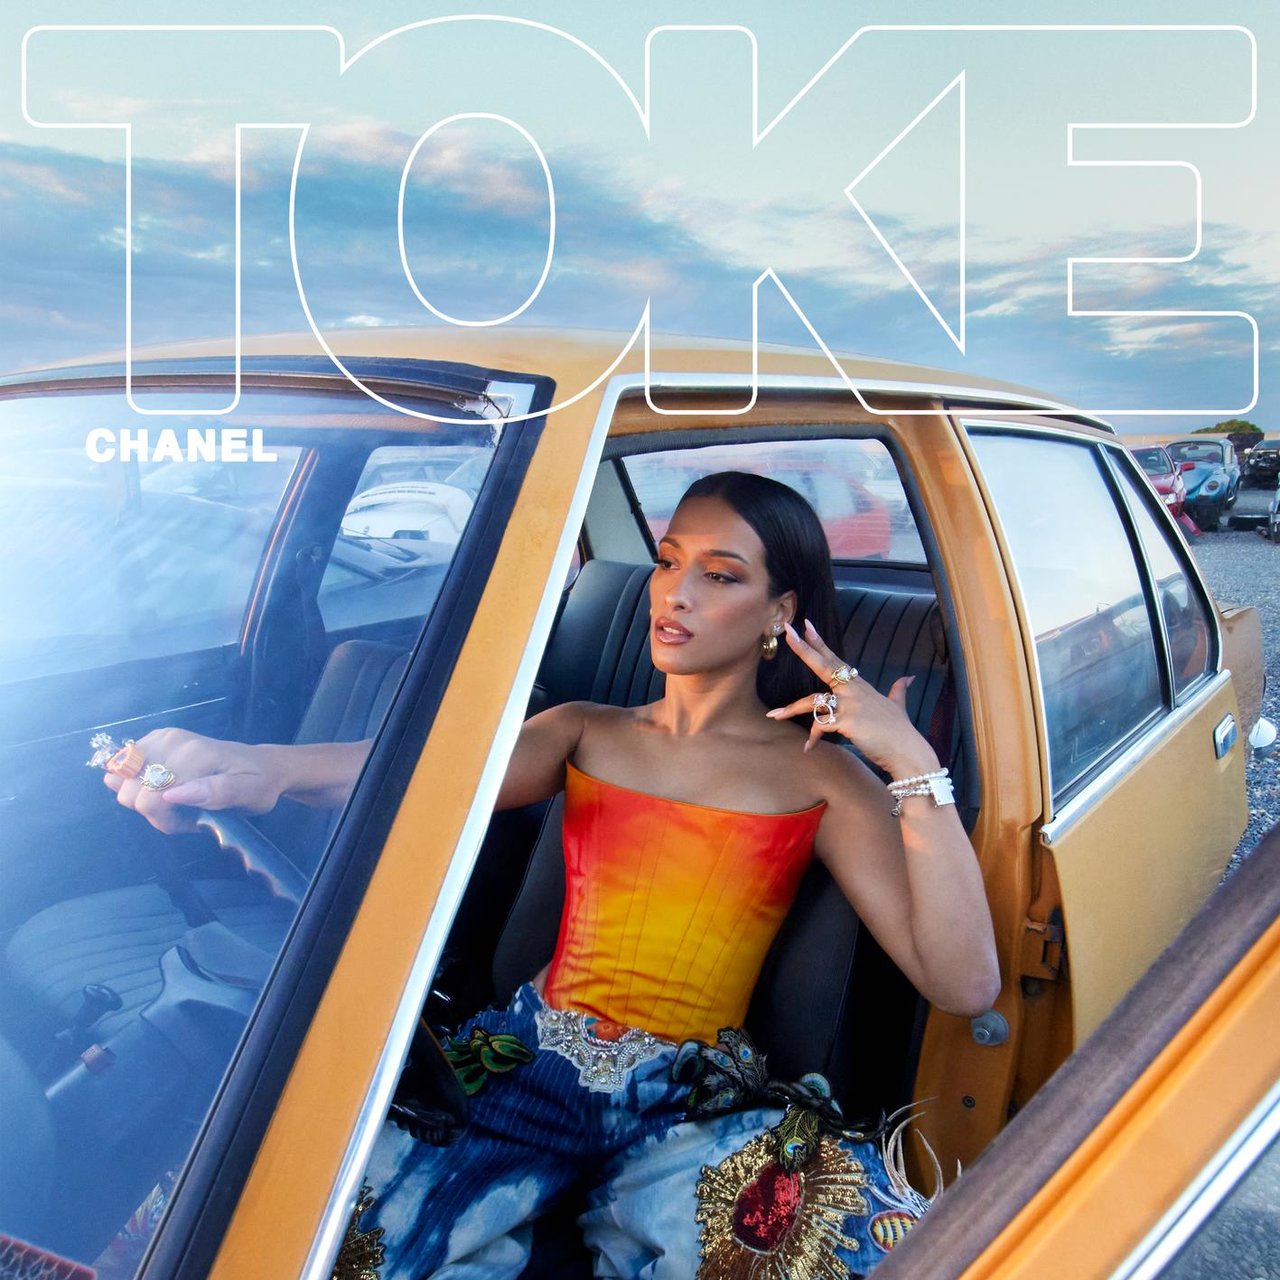 Chanel TOKE cover artwork